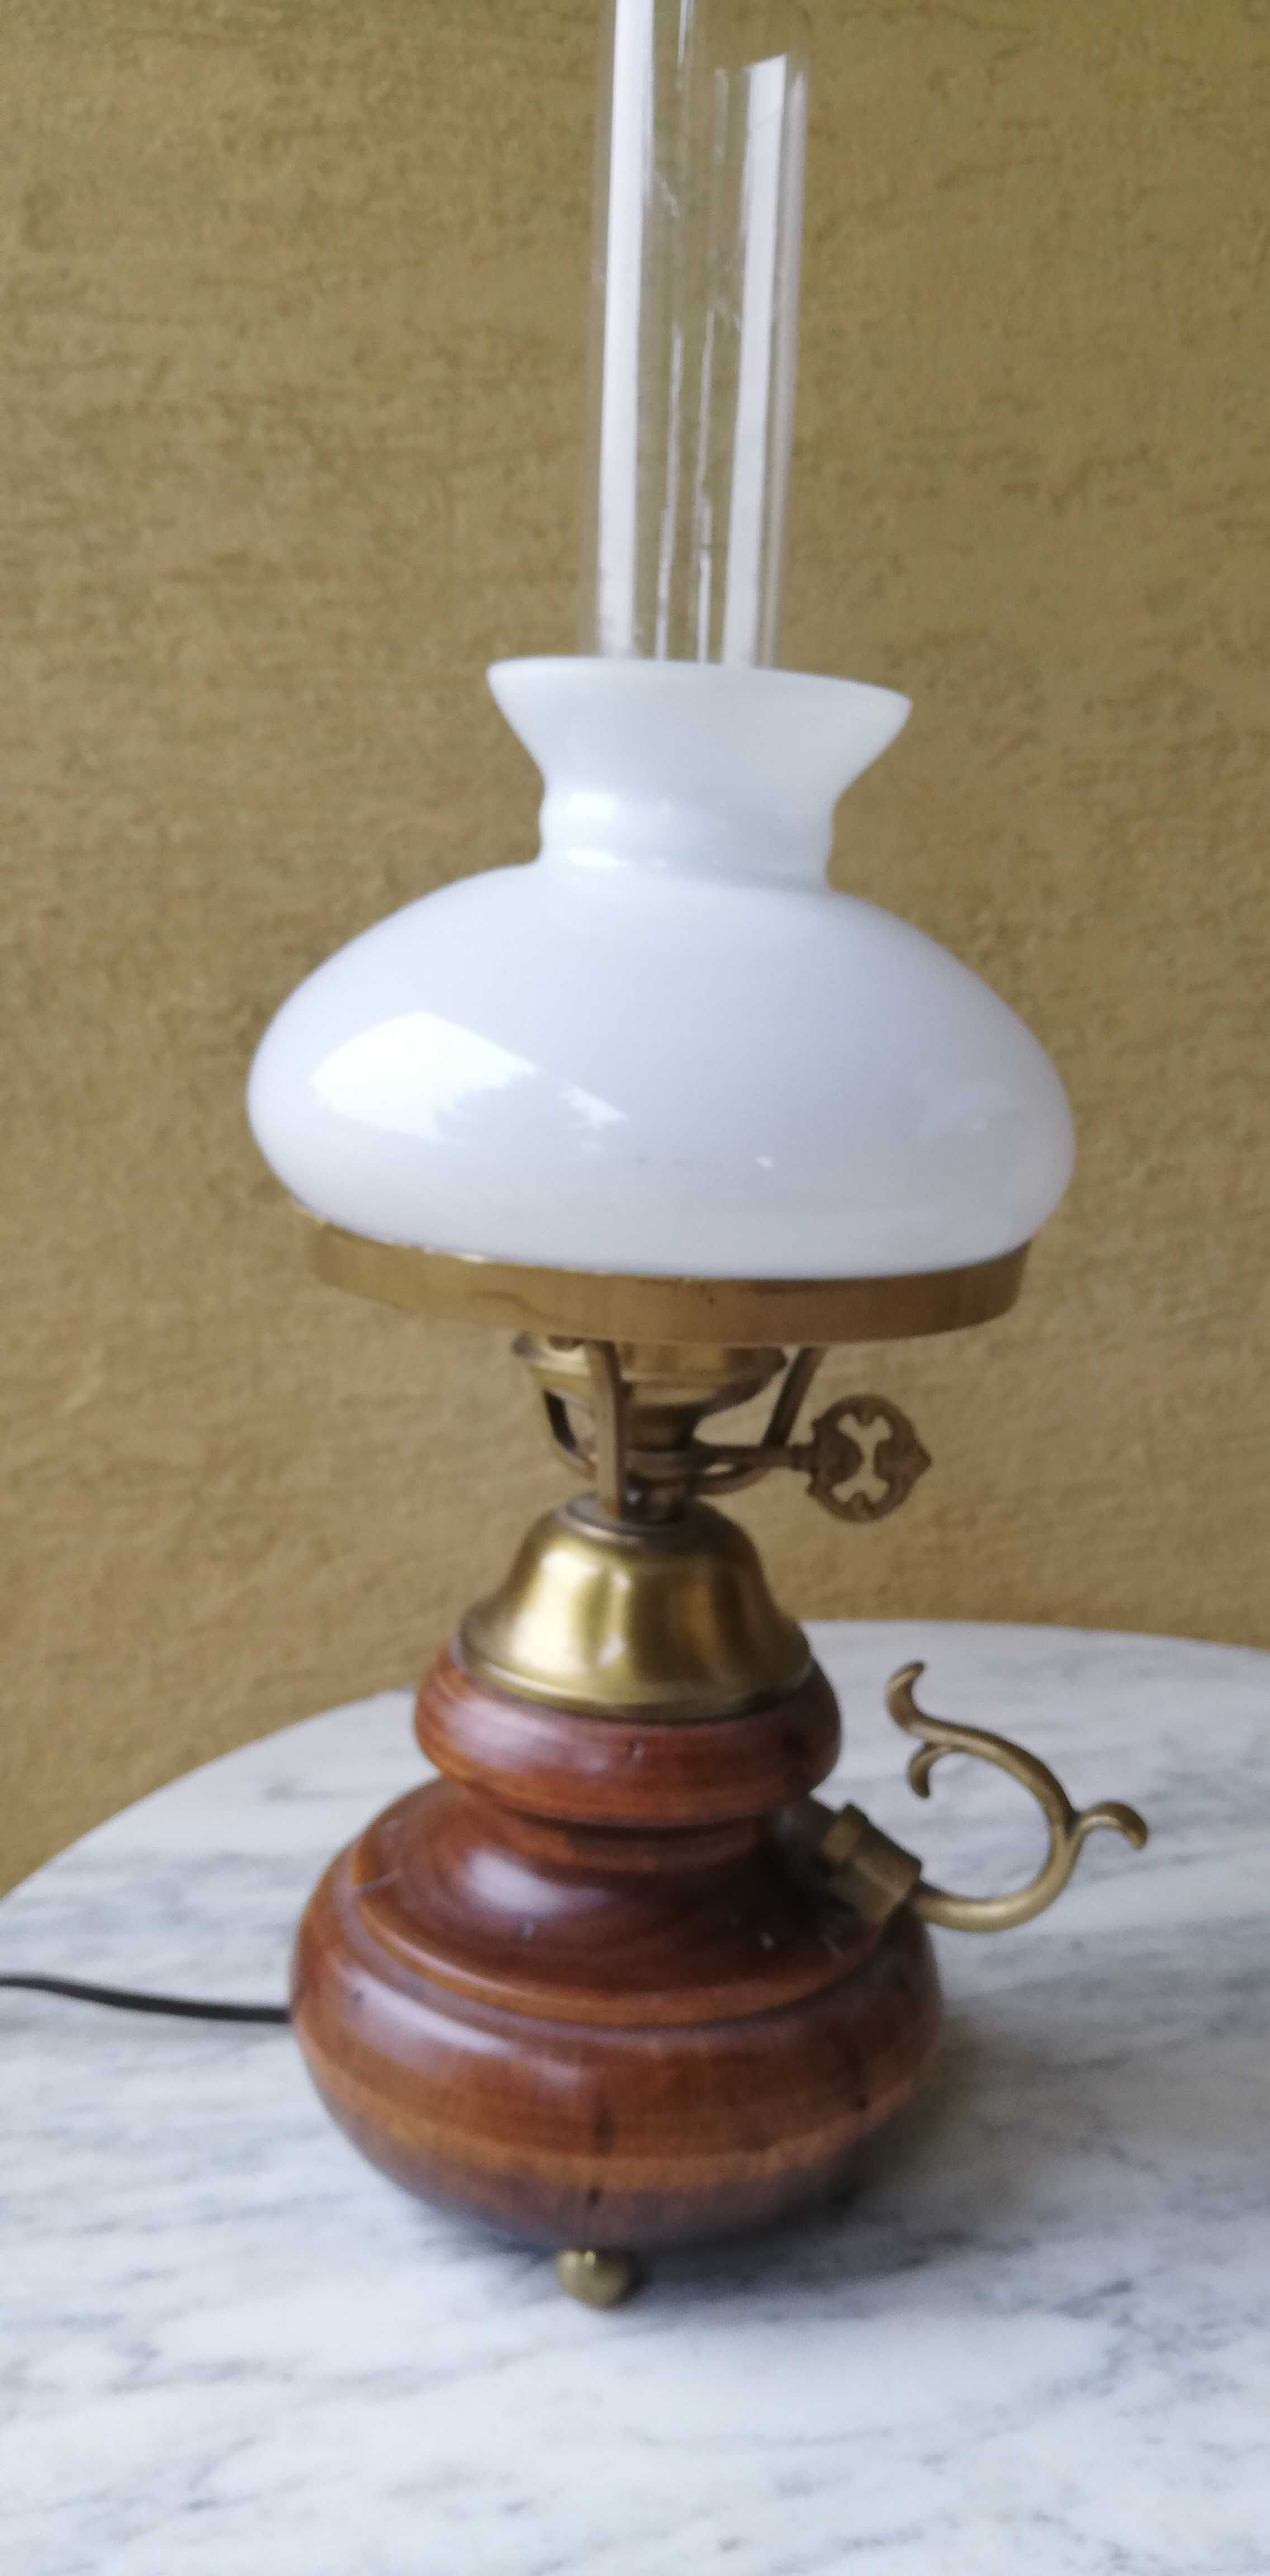 Lampka mała lampa stylowa naftowa święta prezent lampion